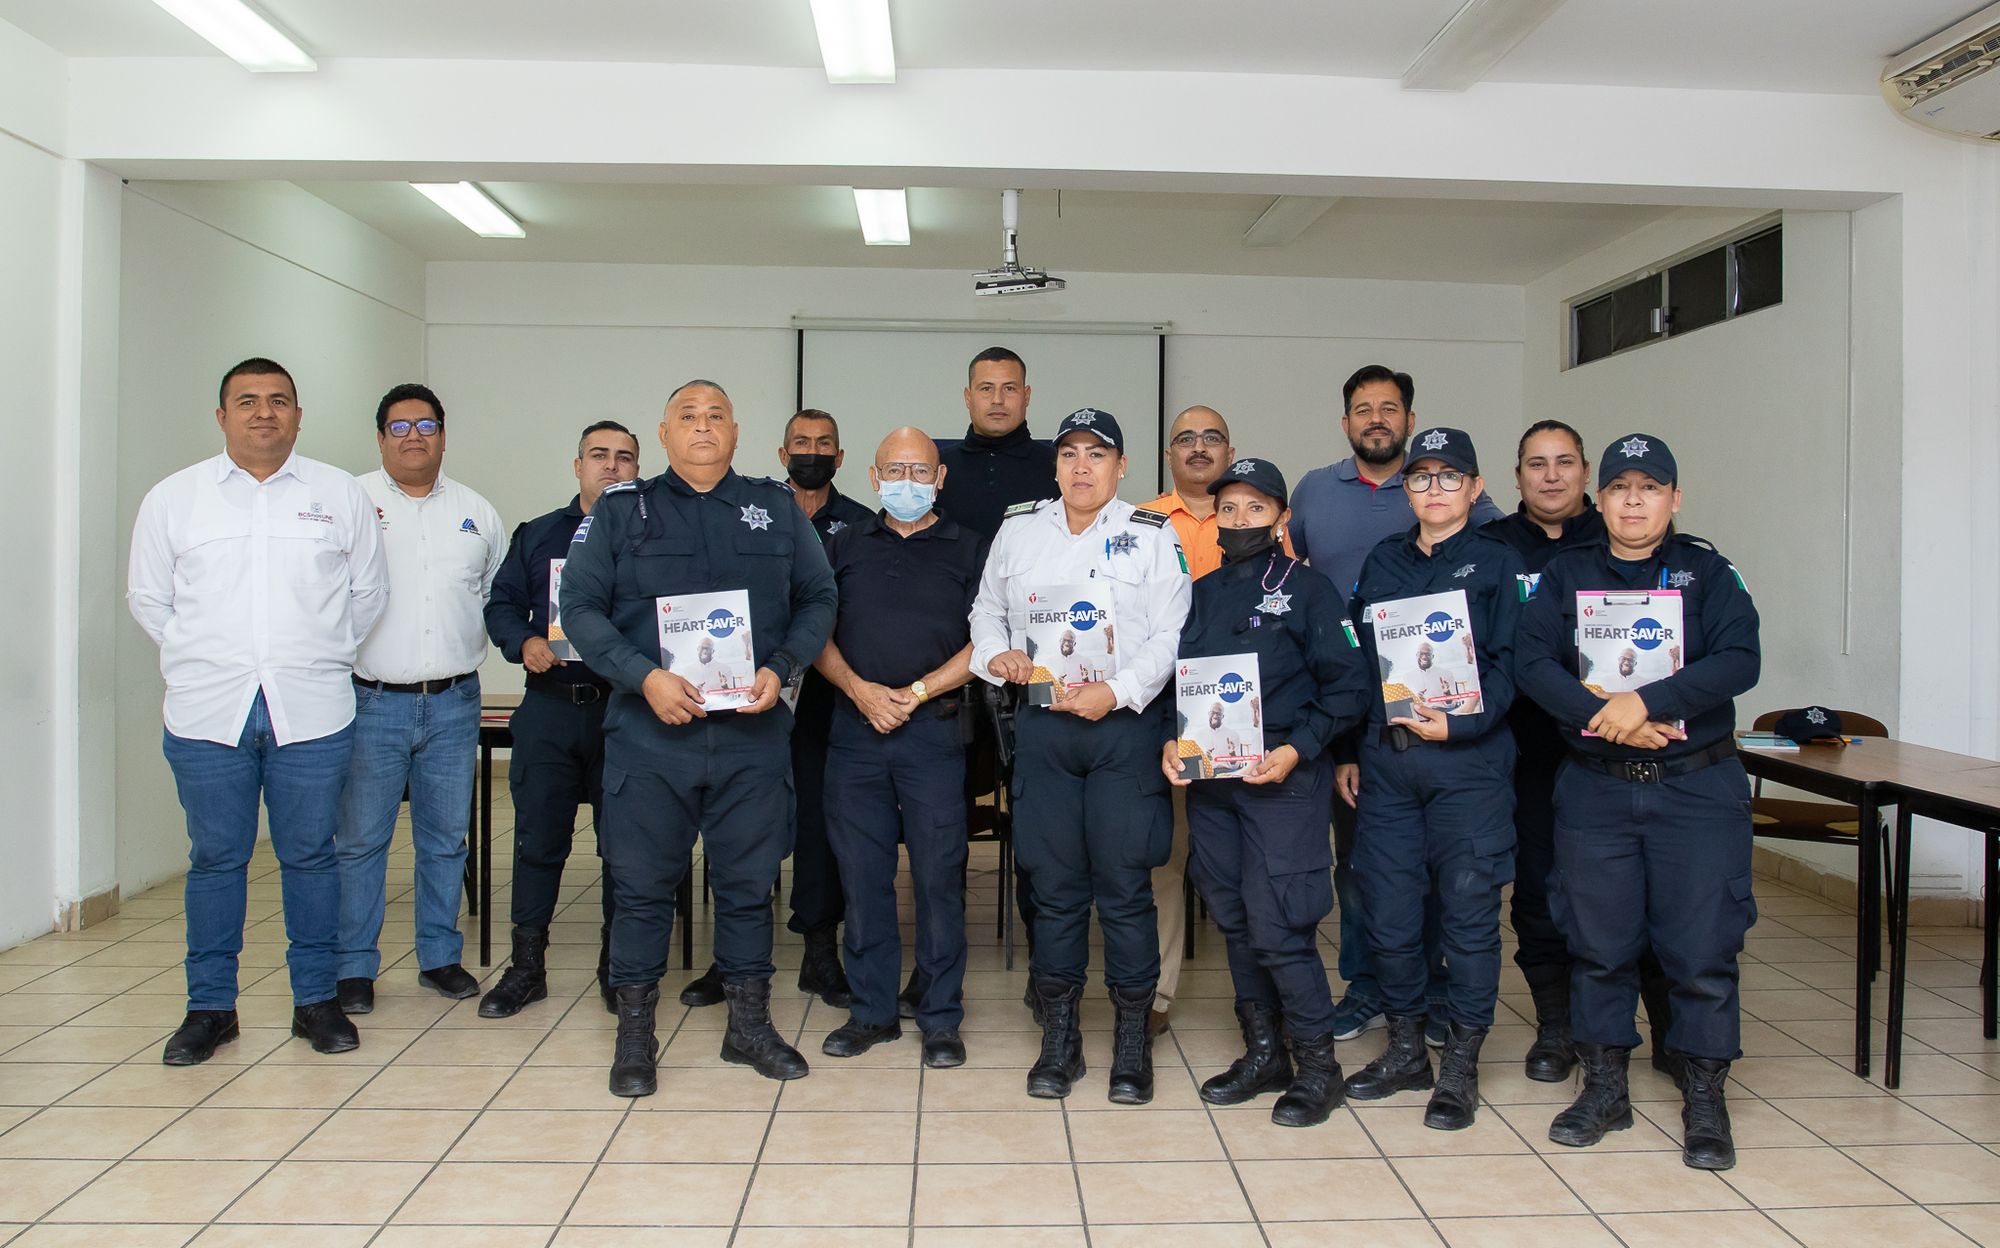 Certifica en primeros auxilios a personal de la Policía Municipal de La Paz